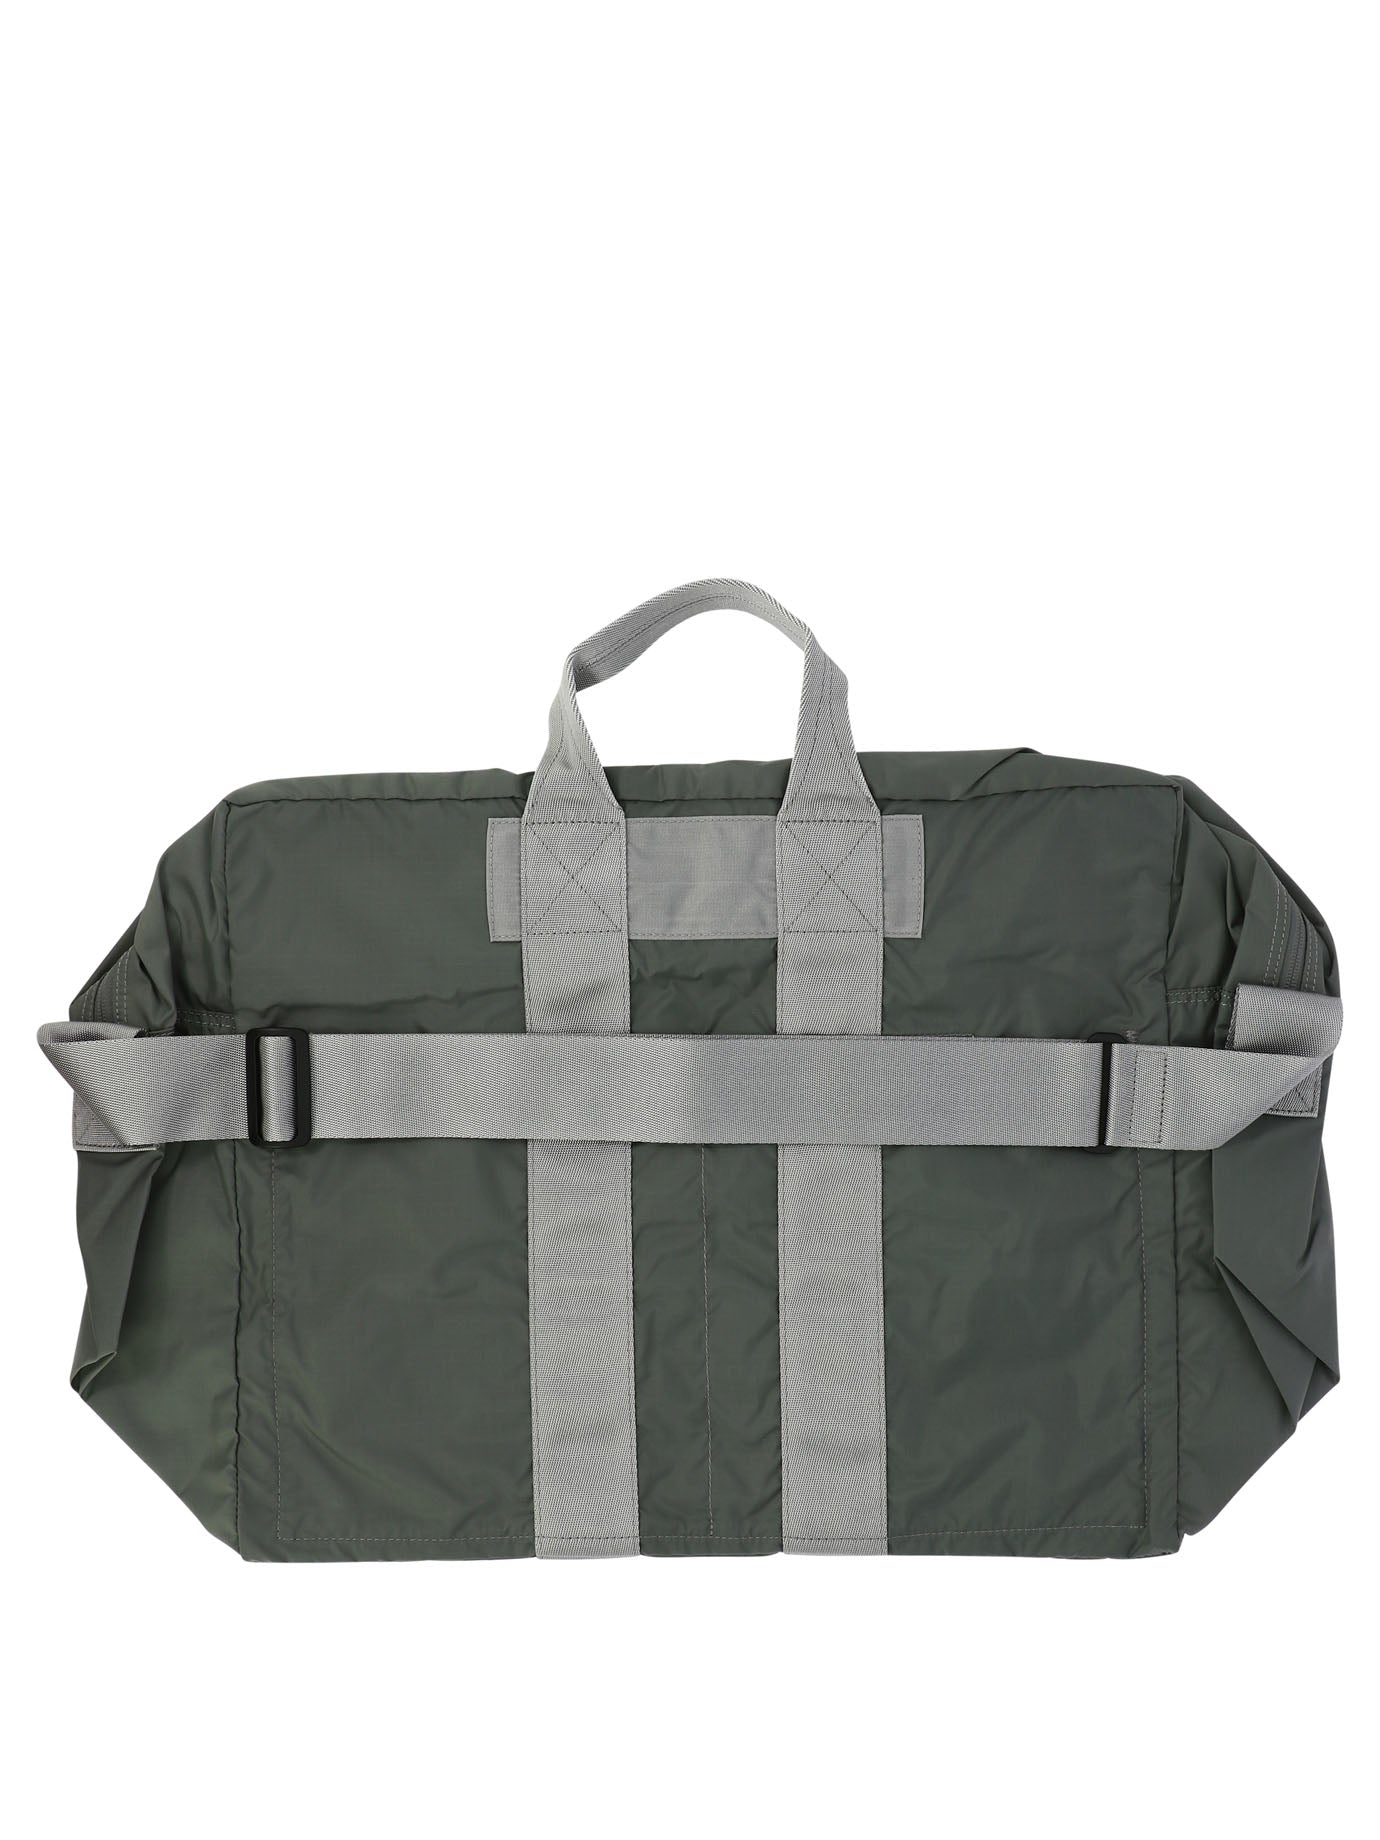 Porter Yoshida Flex 2 Way Duffle Bag | Balardi